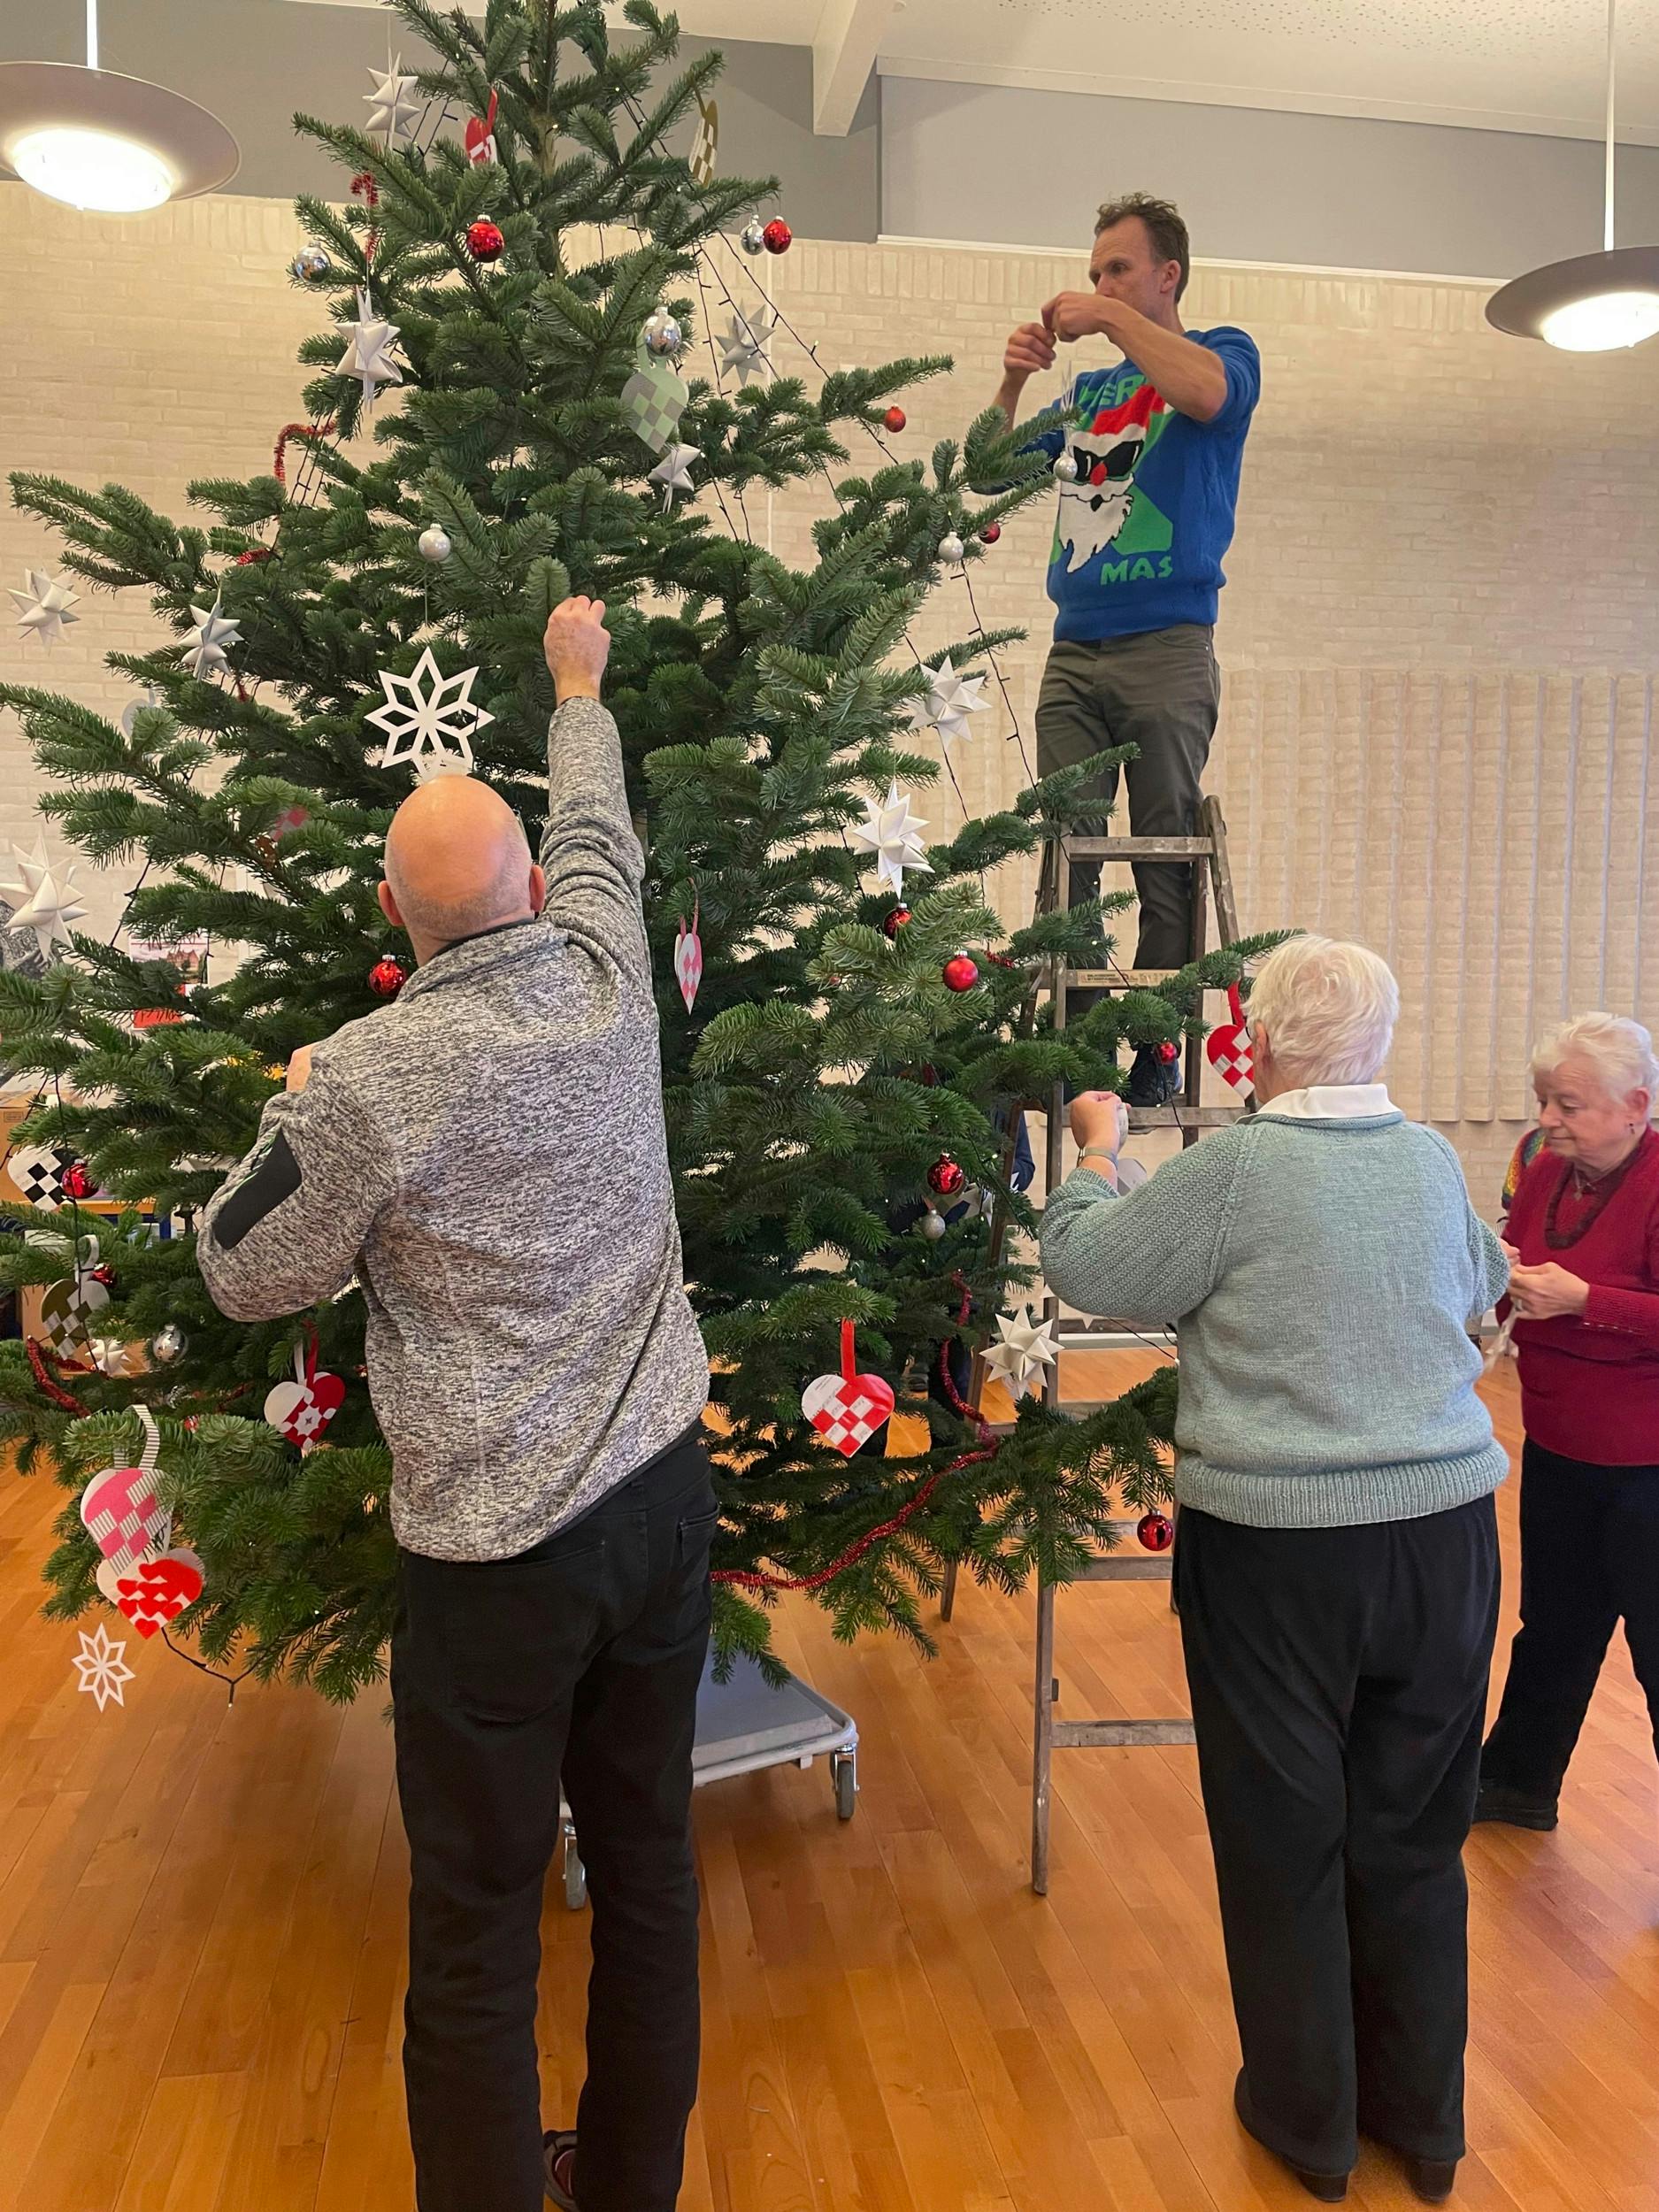 Juleaftensdag pynter kursisterne det høje juletræ.